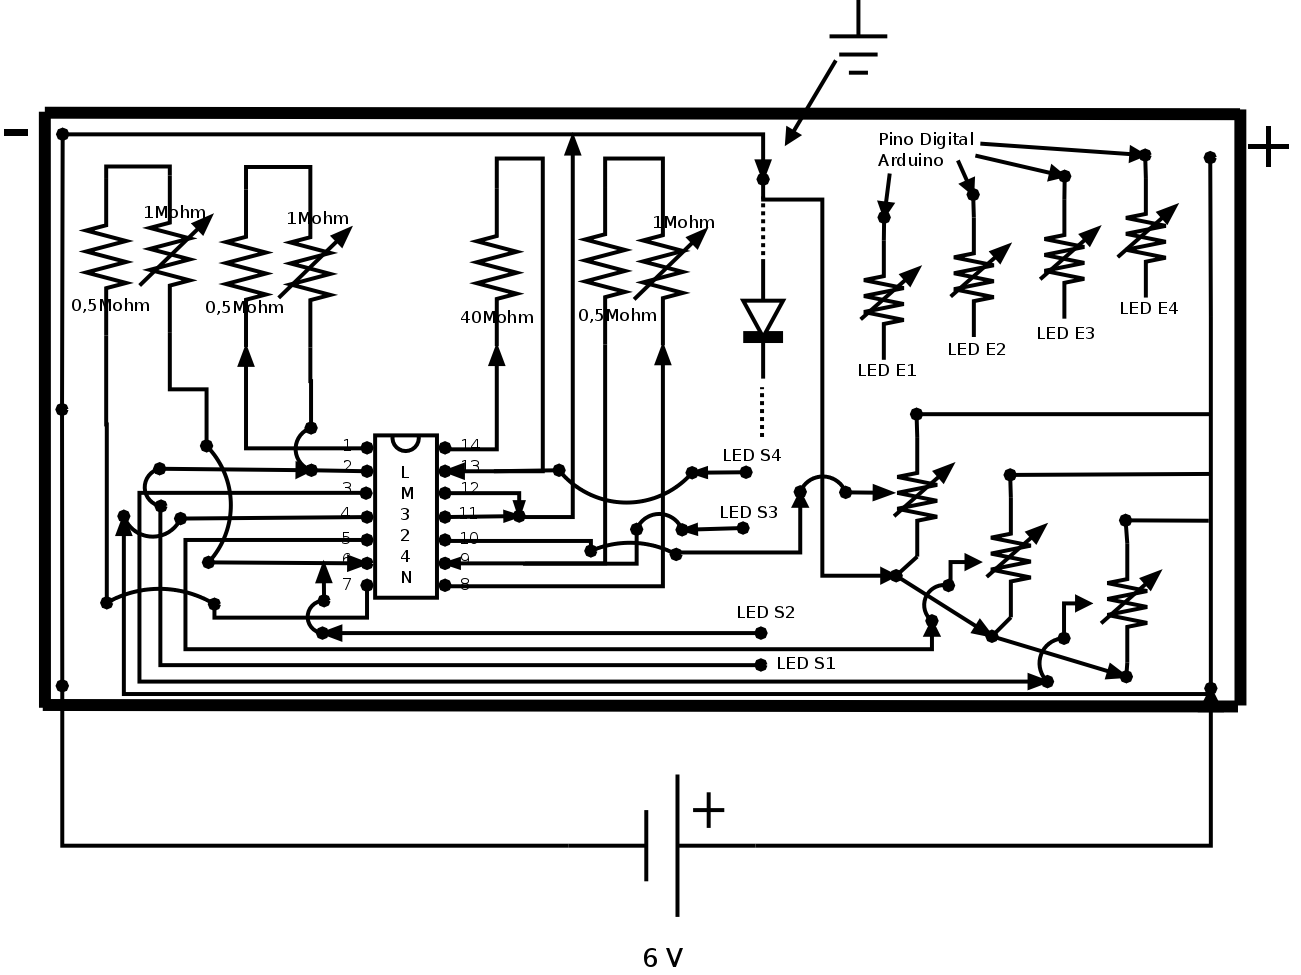 Diagrama do circuito montado em uma placa. (LED E - LED Emissor, LED S - LED Sensor)